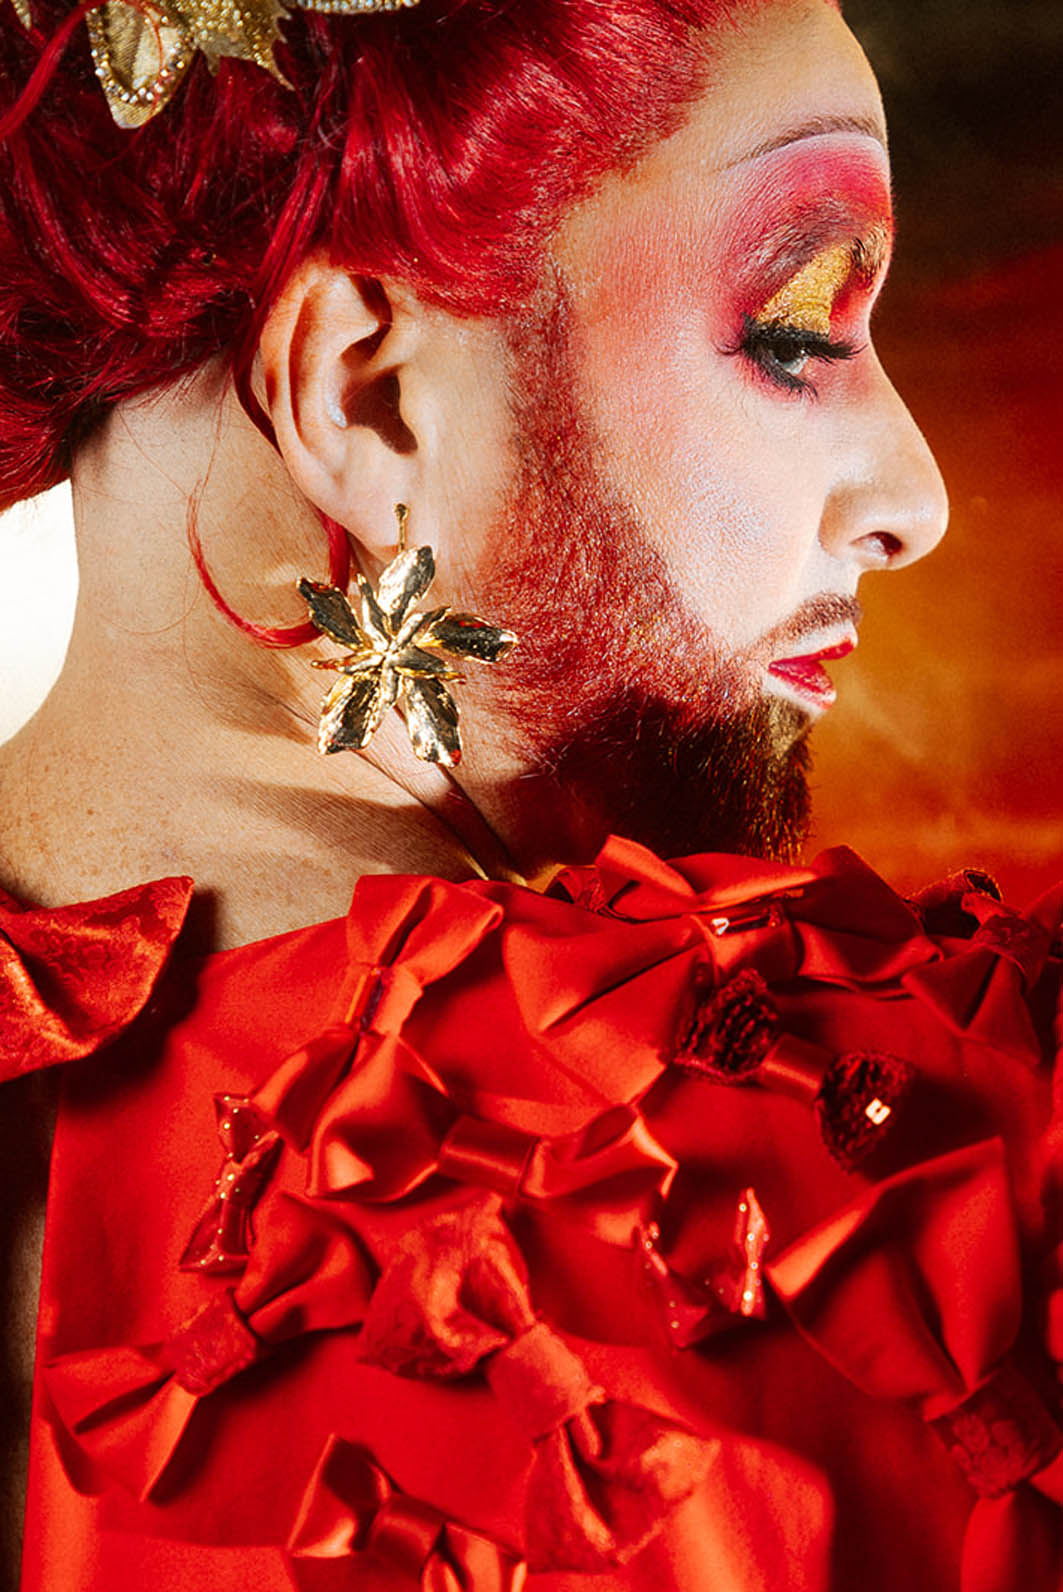 Drag queen portant une tenue de avec accumulation de nœuds rouges et or.